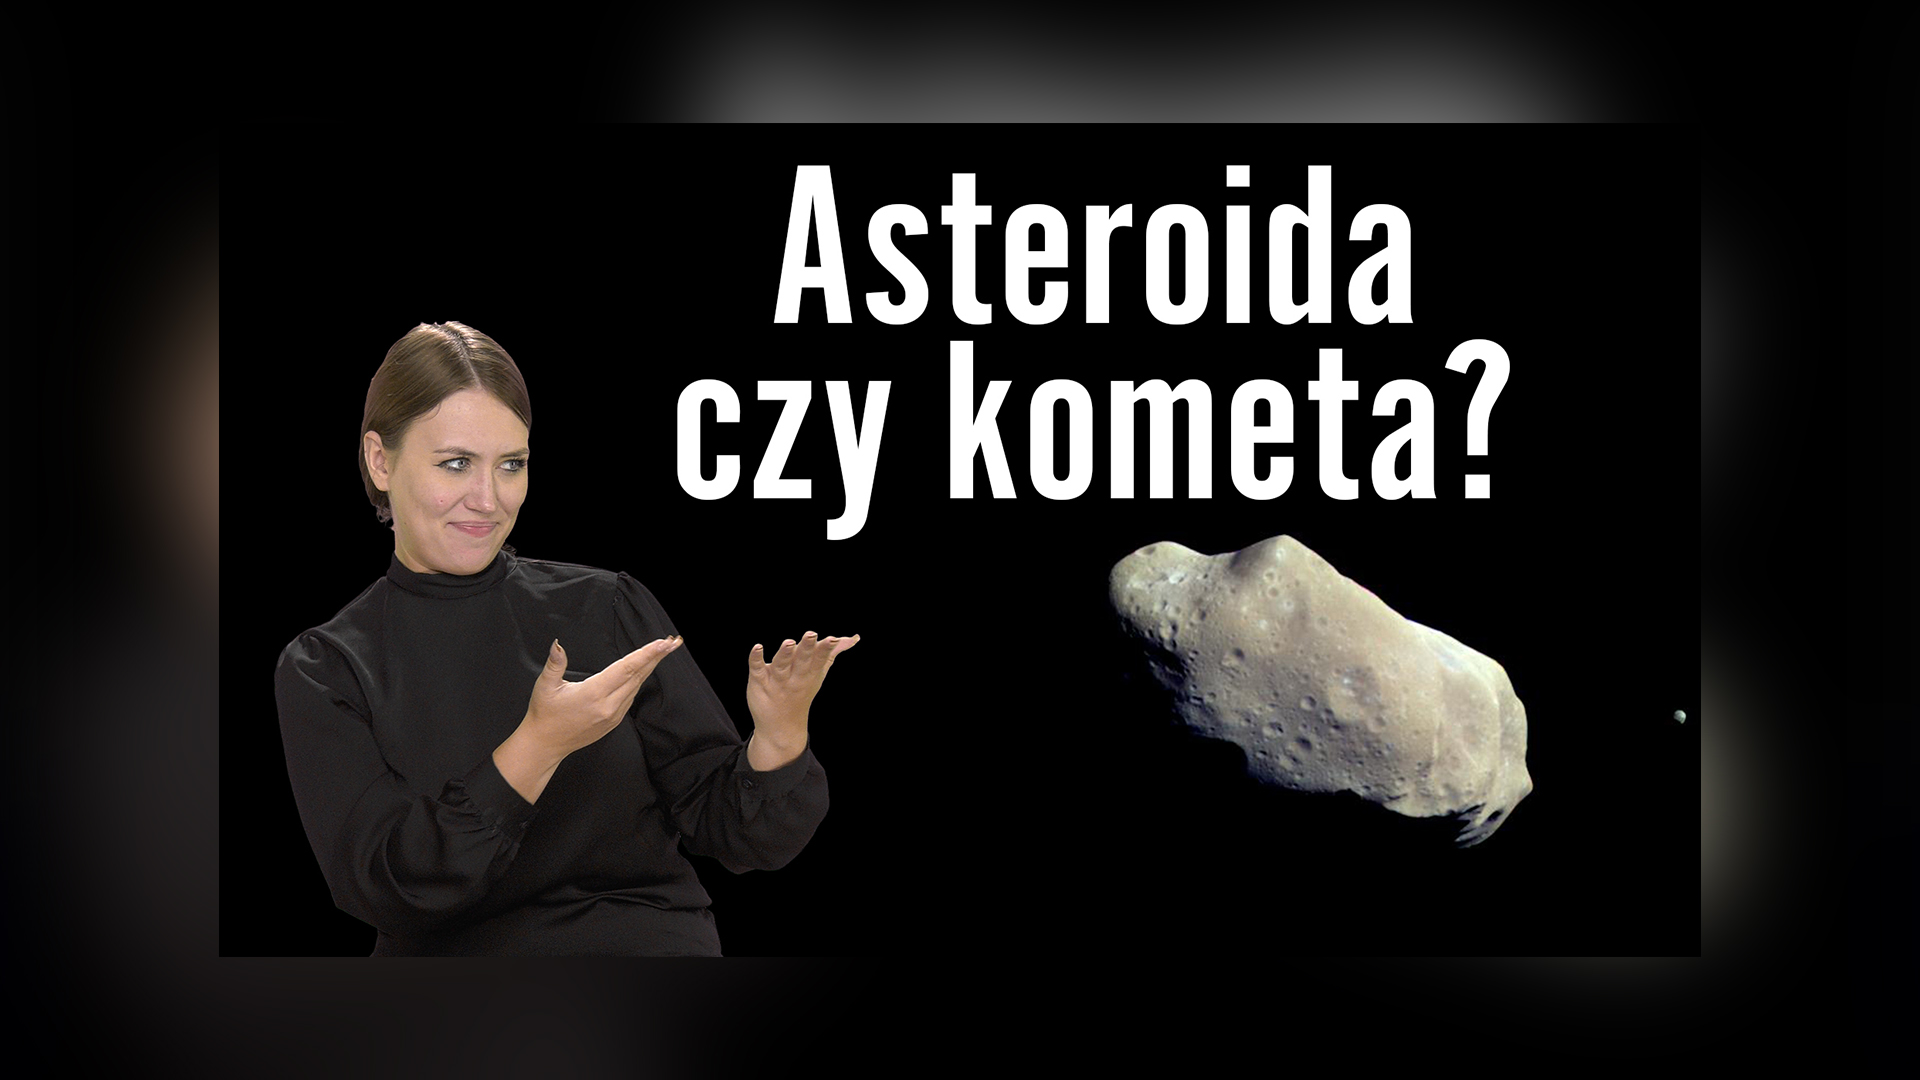 Film do odcinka z serii Astronomia ze Światem Głuchych. Na ciemnym tle po lewej stronie Nikola Śliwa, młoda kobieta, tłumaczka języka migowego. Dłońmi oraz postawa ciała pokazuje na swoją lewą stronę, gdzie znajduje się prawdziwe zdjęcie asteroidy 243 Ida. Obok biały, duży napis: „Asteroidy czy kometa?”.